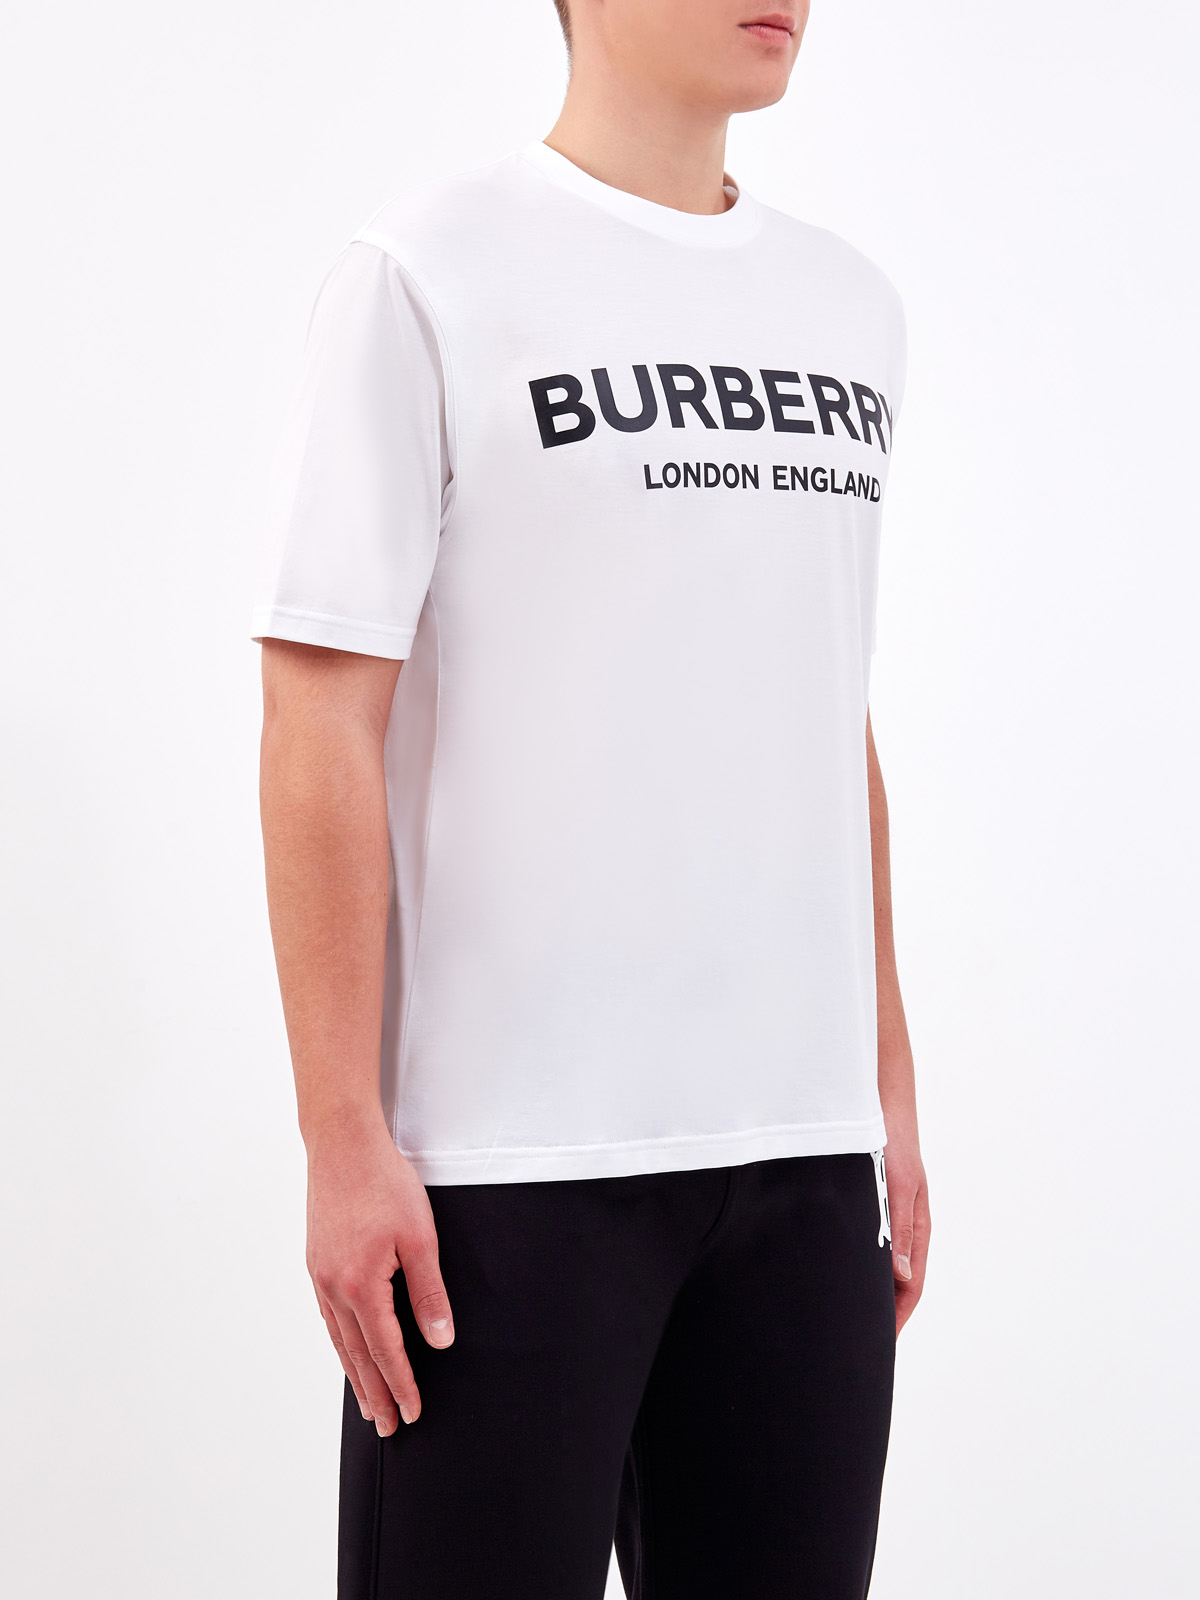 Хлопковая футболка из джерси с аппликацией BURBERRY, цвет белый, размер S - фото 3